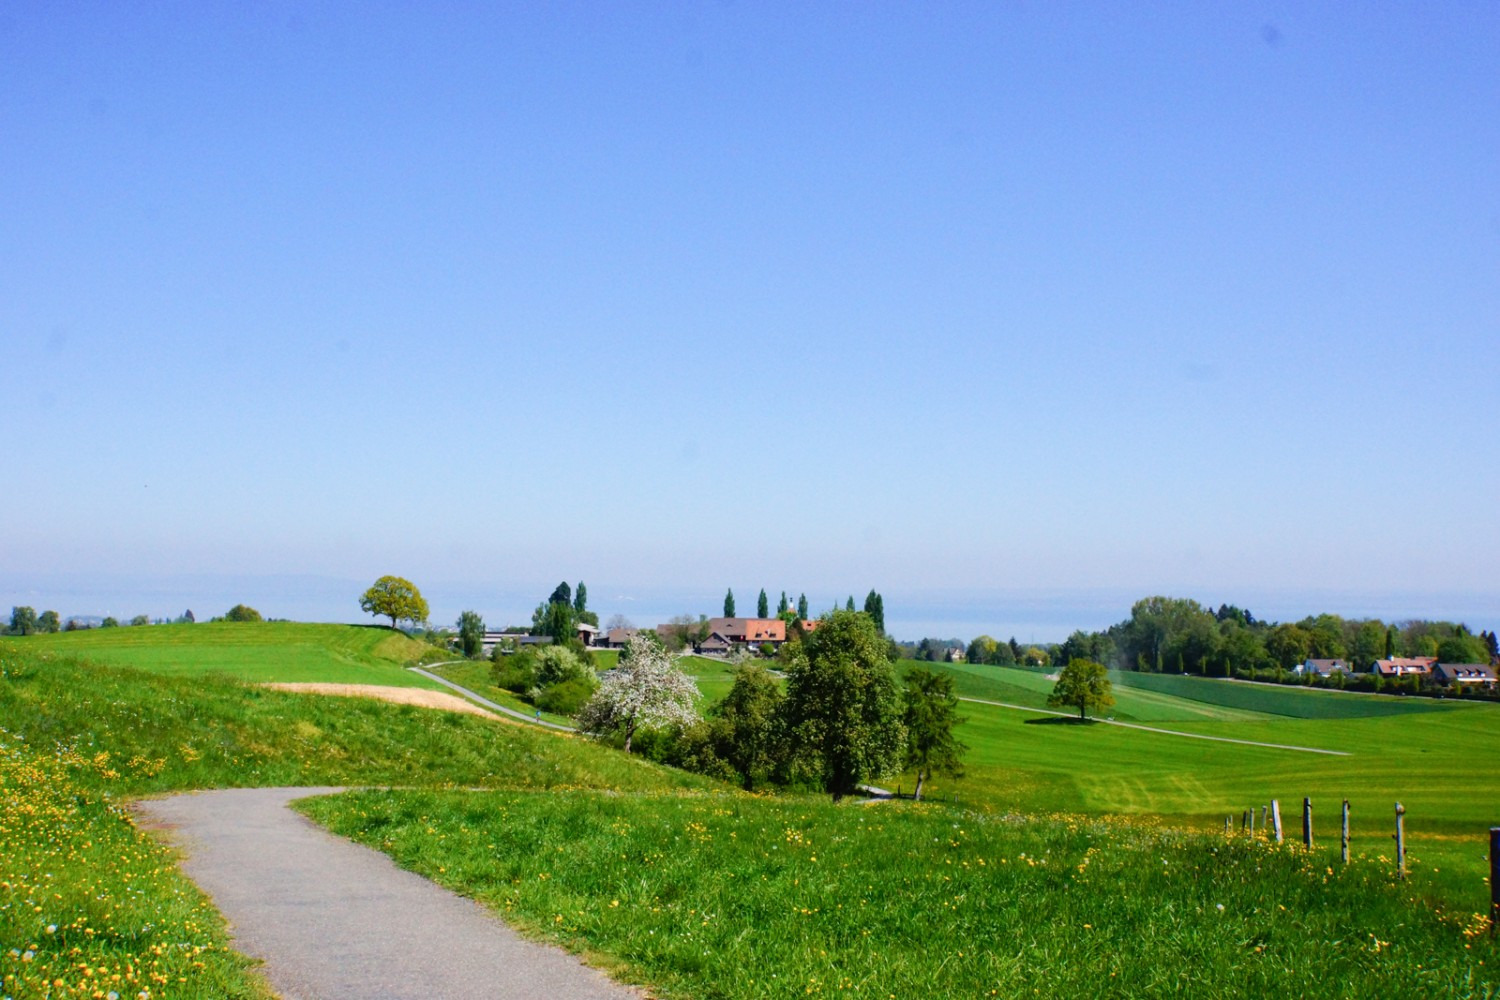 Tout en marchant, on admire régulièrement la vue sur le lac de Constance, comme ici peu avant le domaine du château de Watt. 